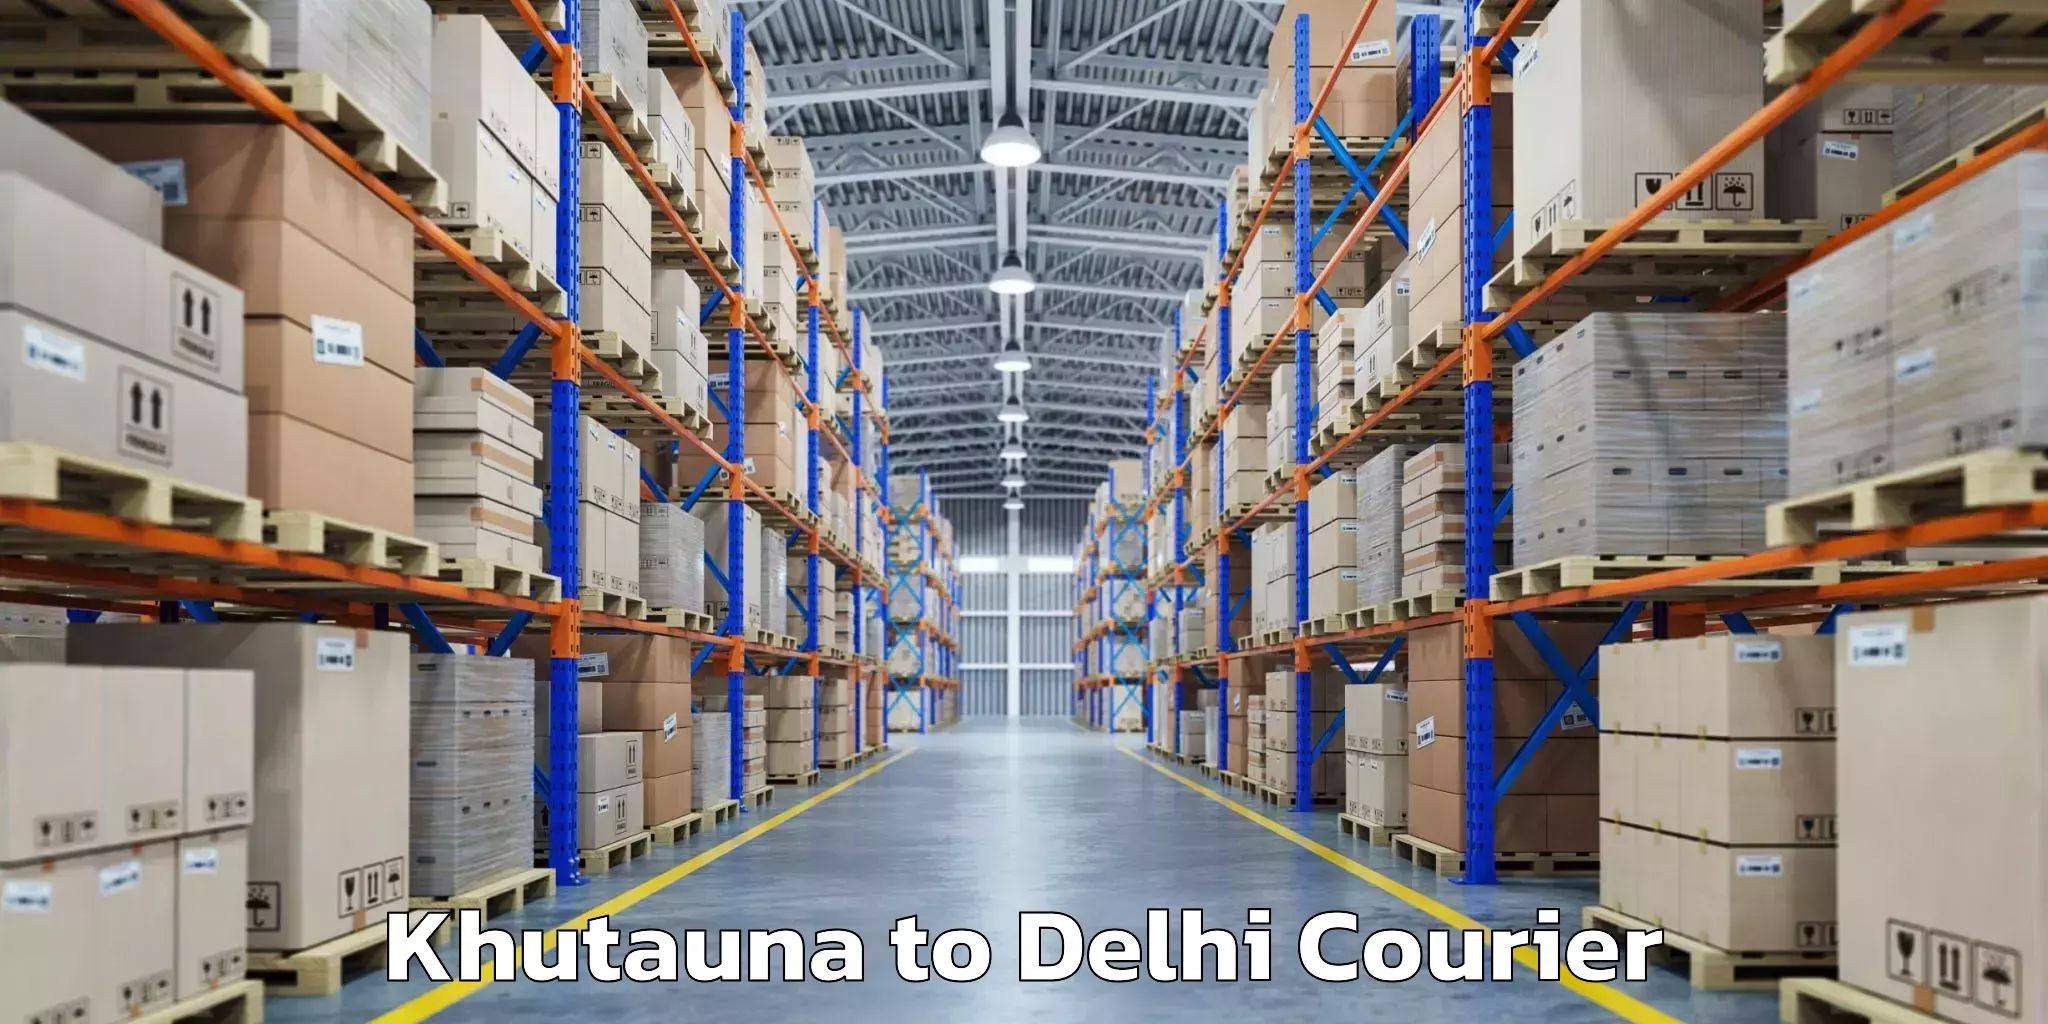 Baggage transport management Khutauna to NIT Delhi